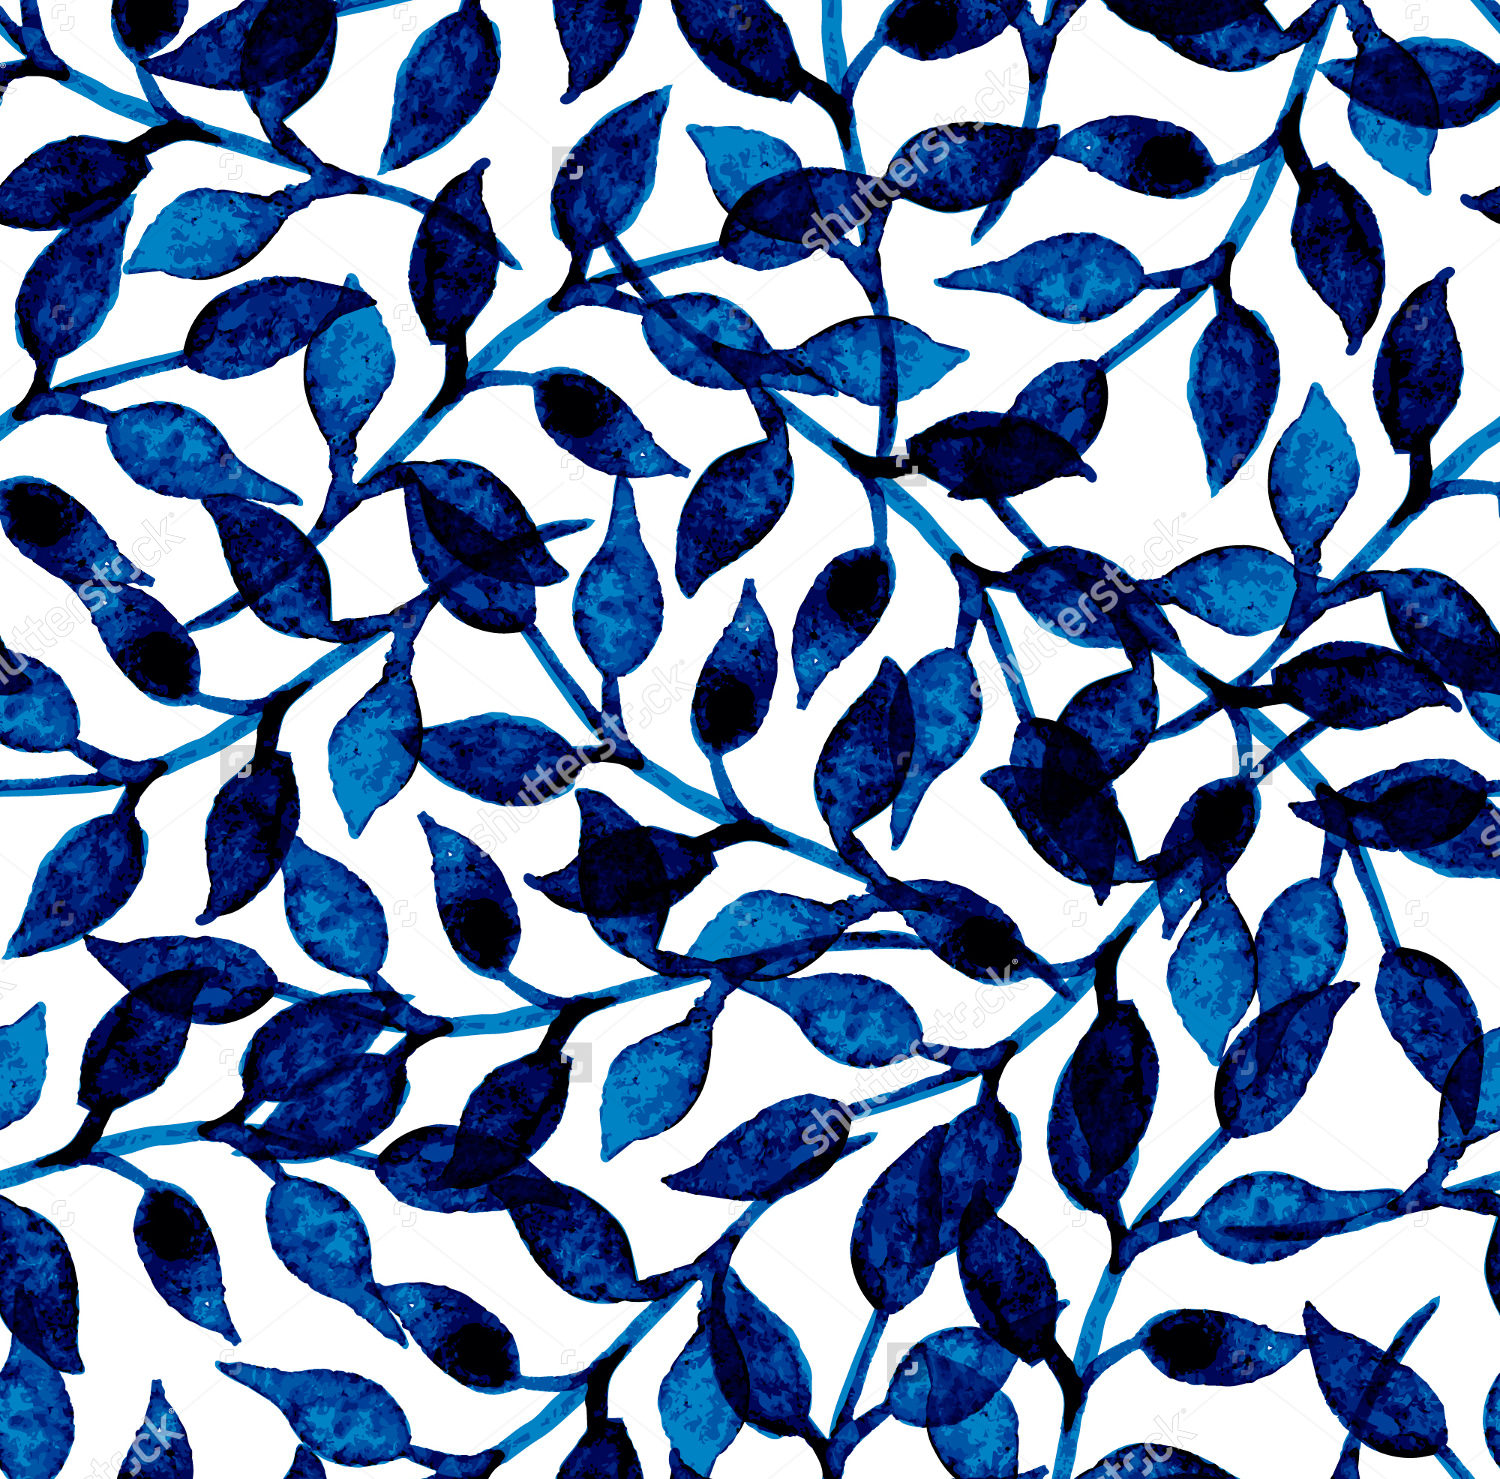 かわいいパターンの壁紙,青い,パターン,コバルトブルー,アクア,エレクトリックブルー